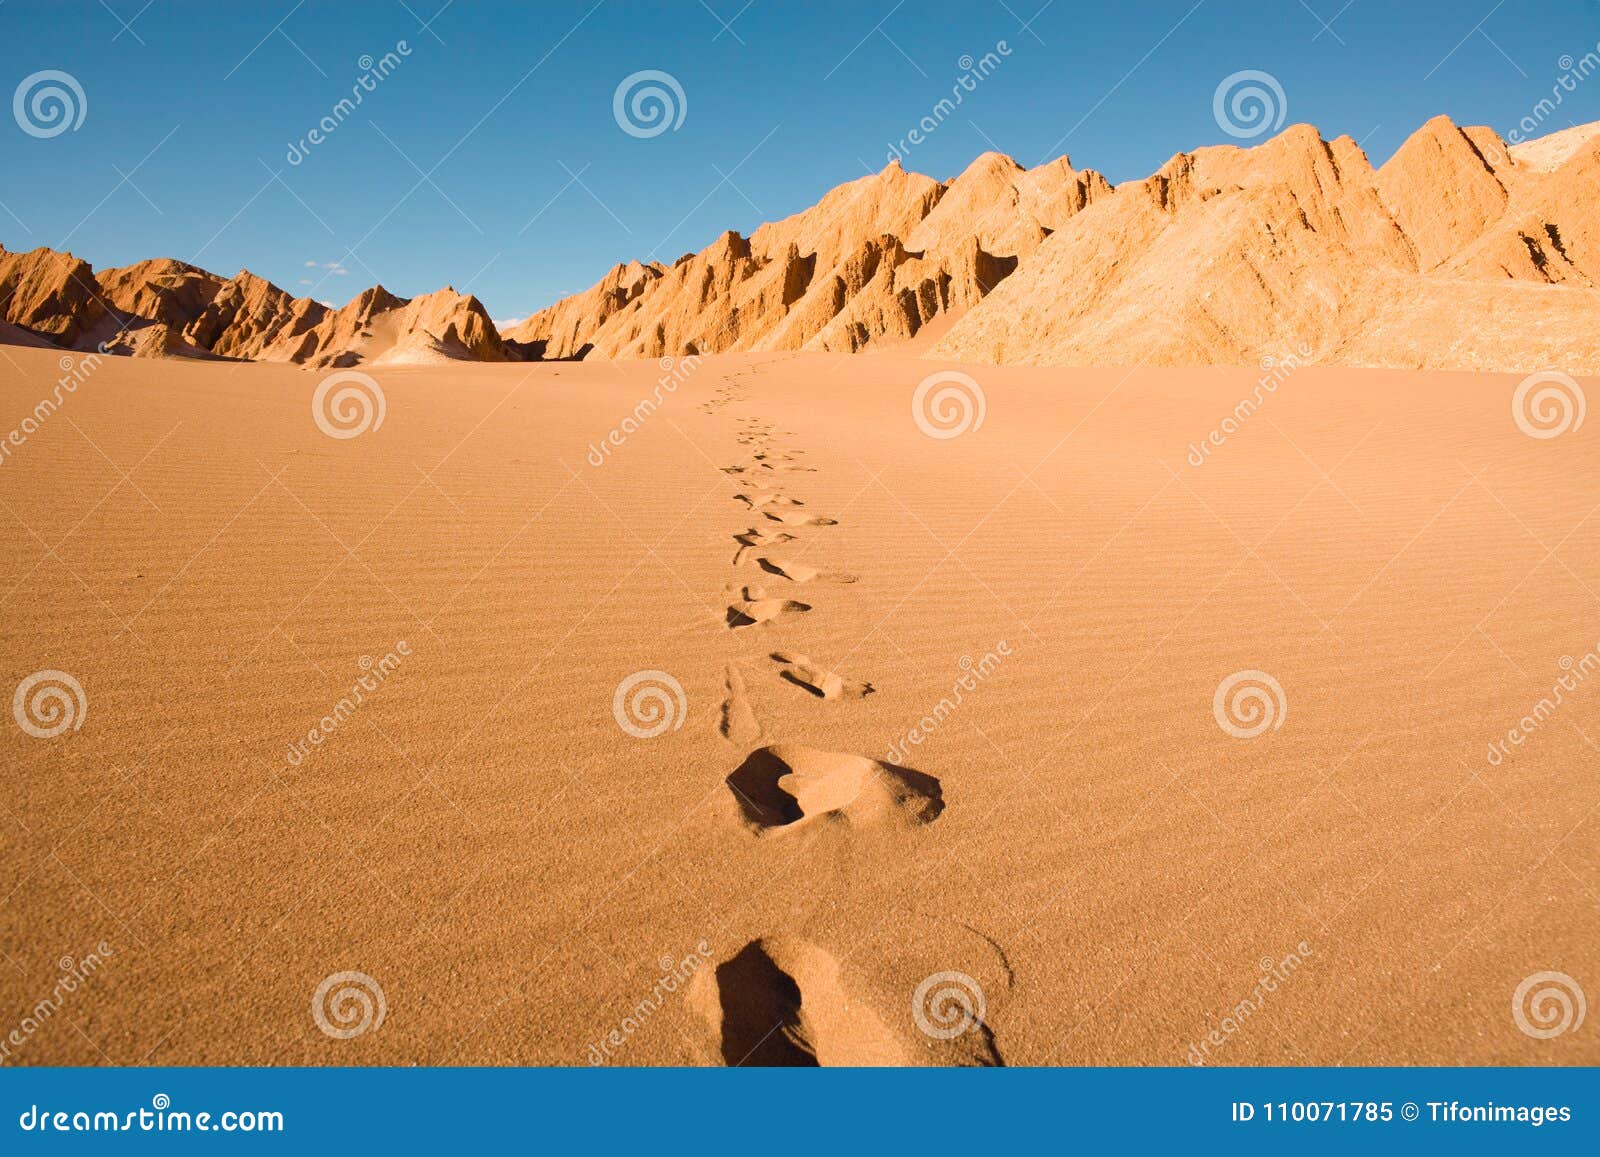 footprints at valle de la muerte in atacama desert